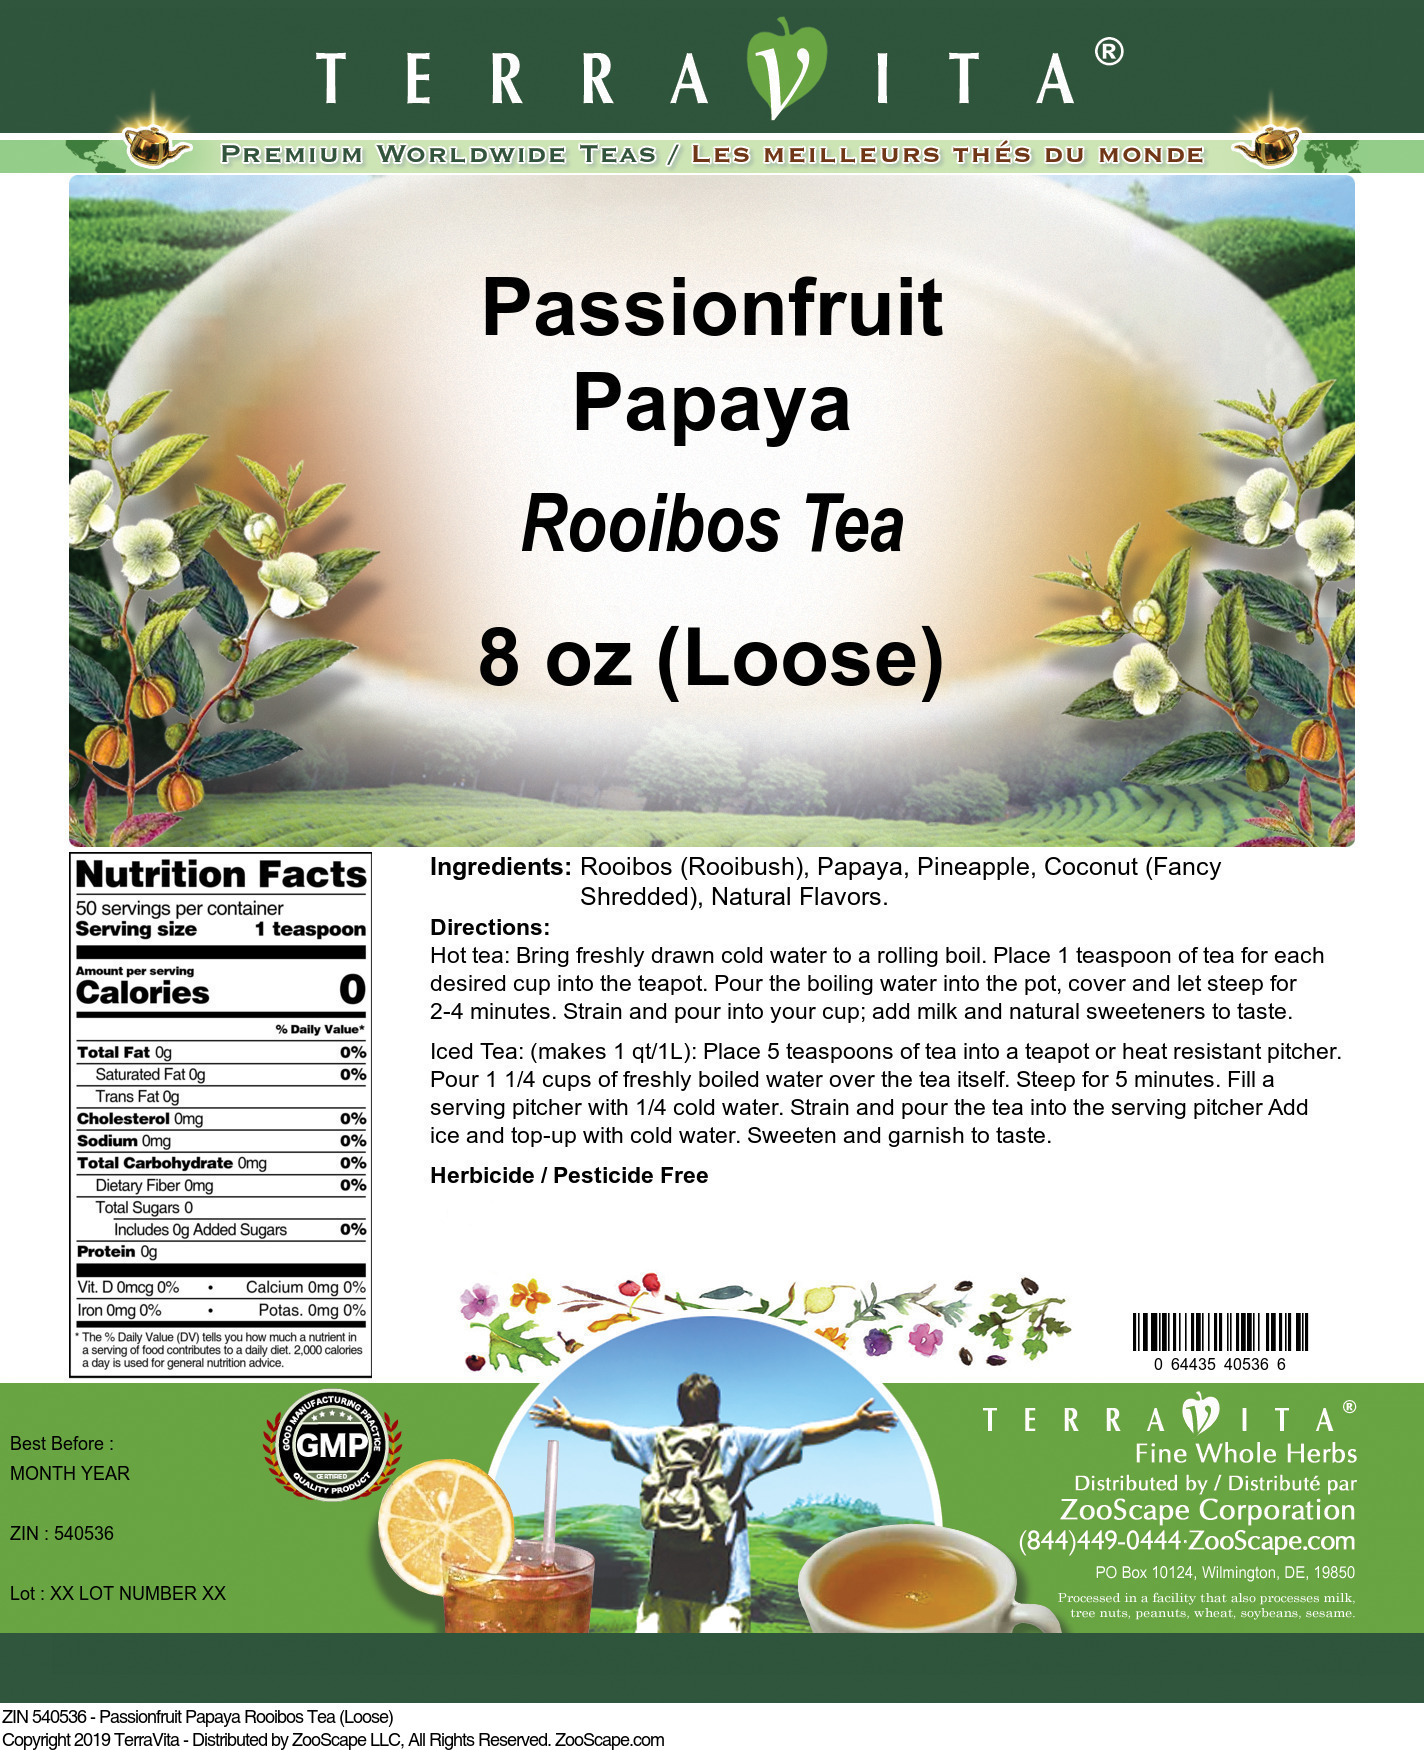 Passionfruit Papaya Rooibos Tea (Loose) - Label